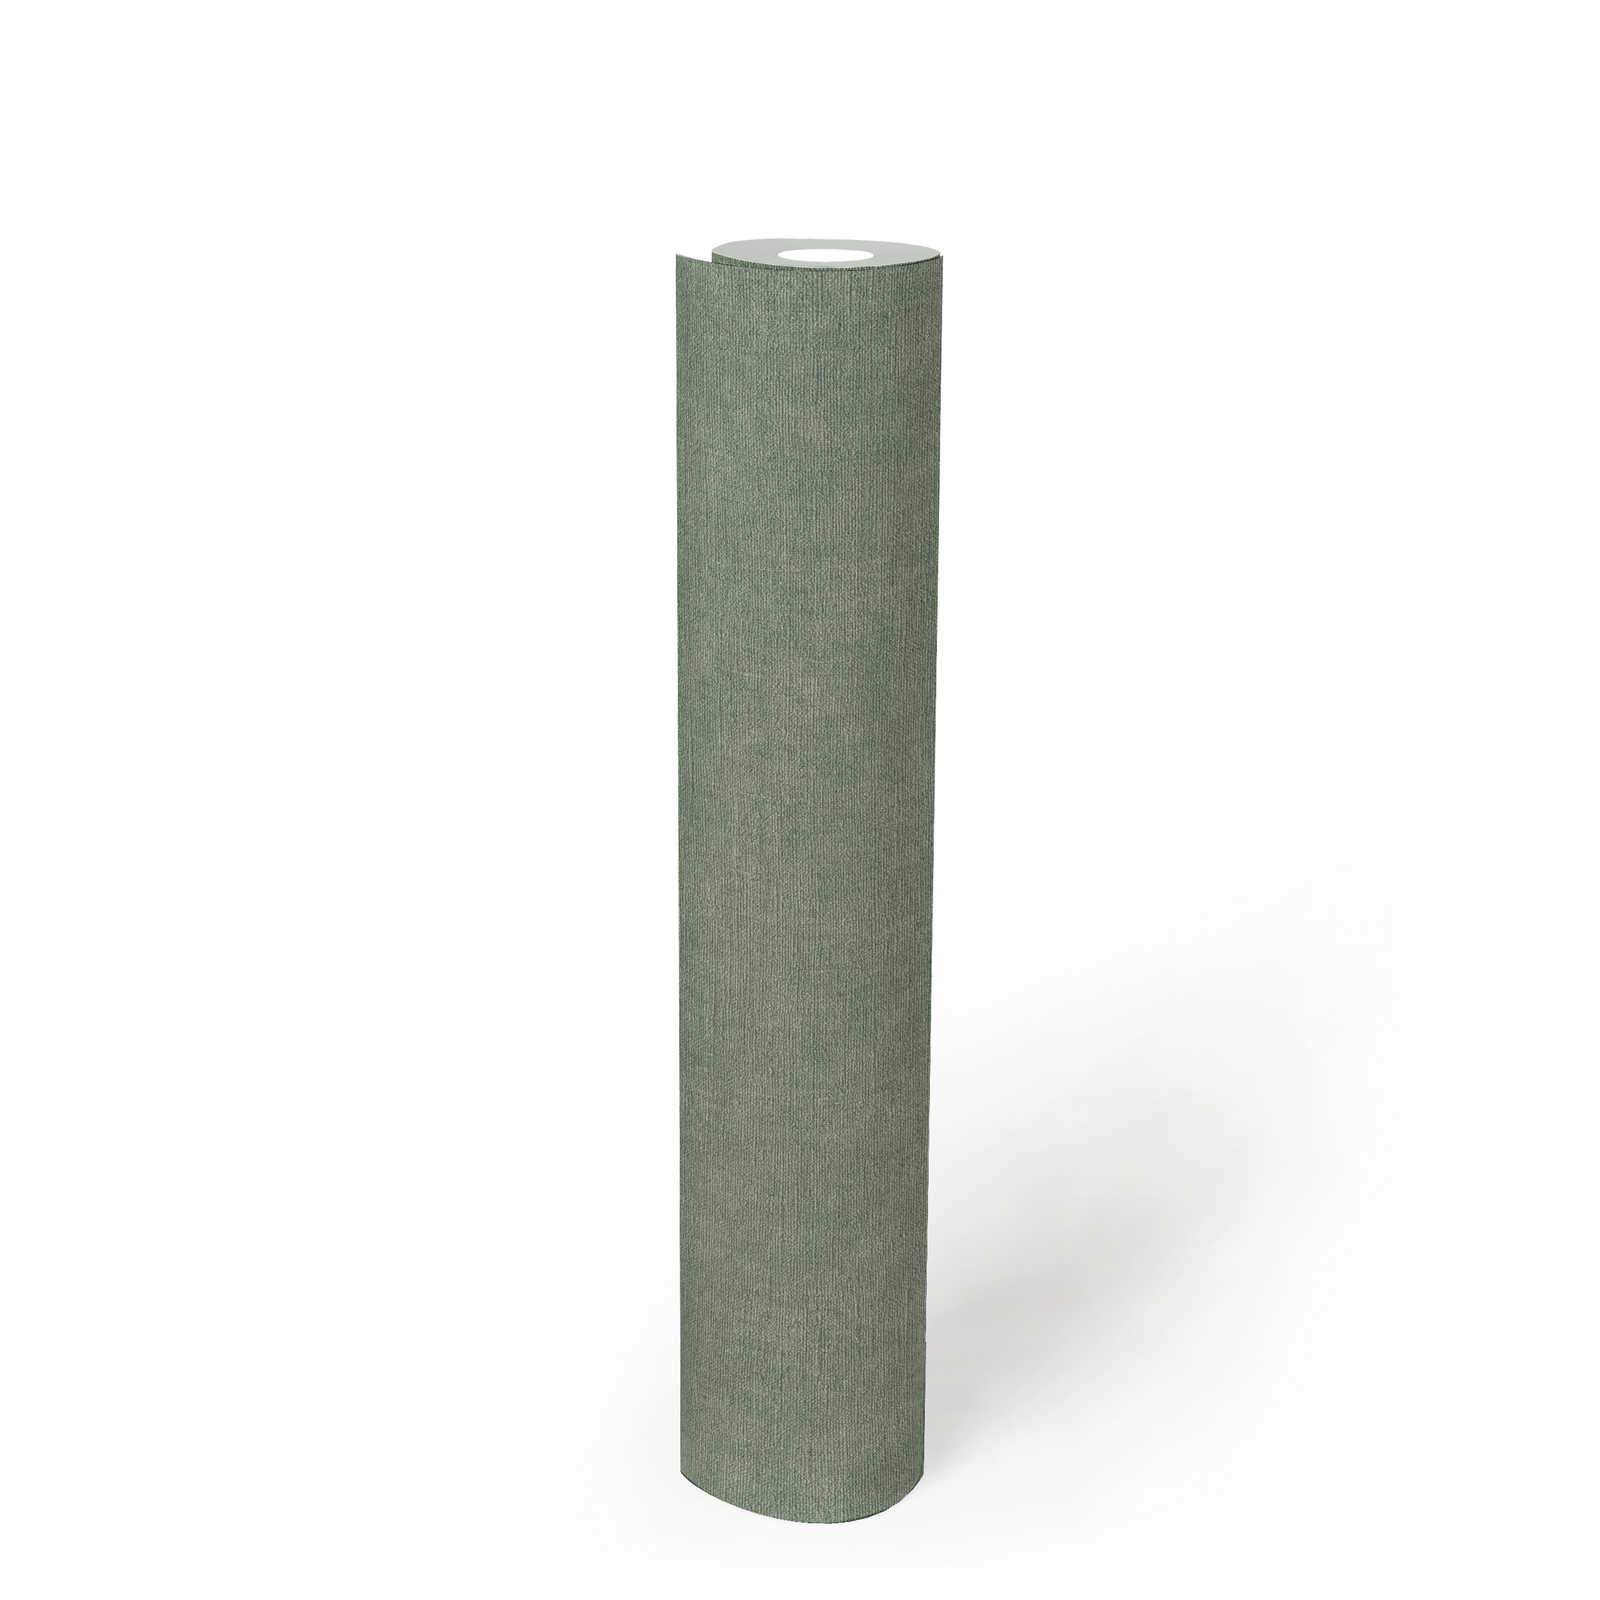             papier peint en papier uni légèrement structuré aspect textile - vert, gris
        